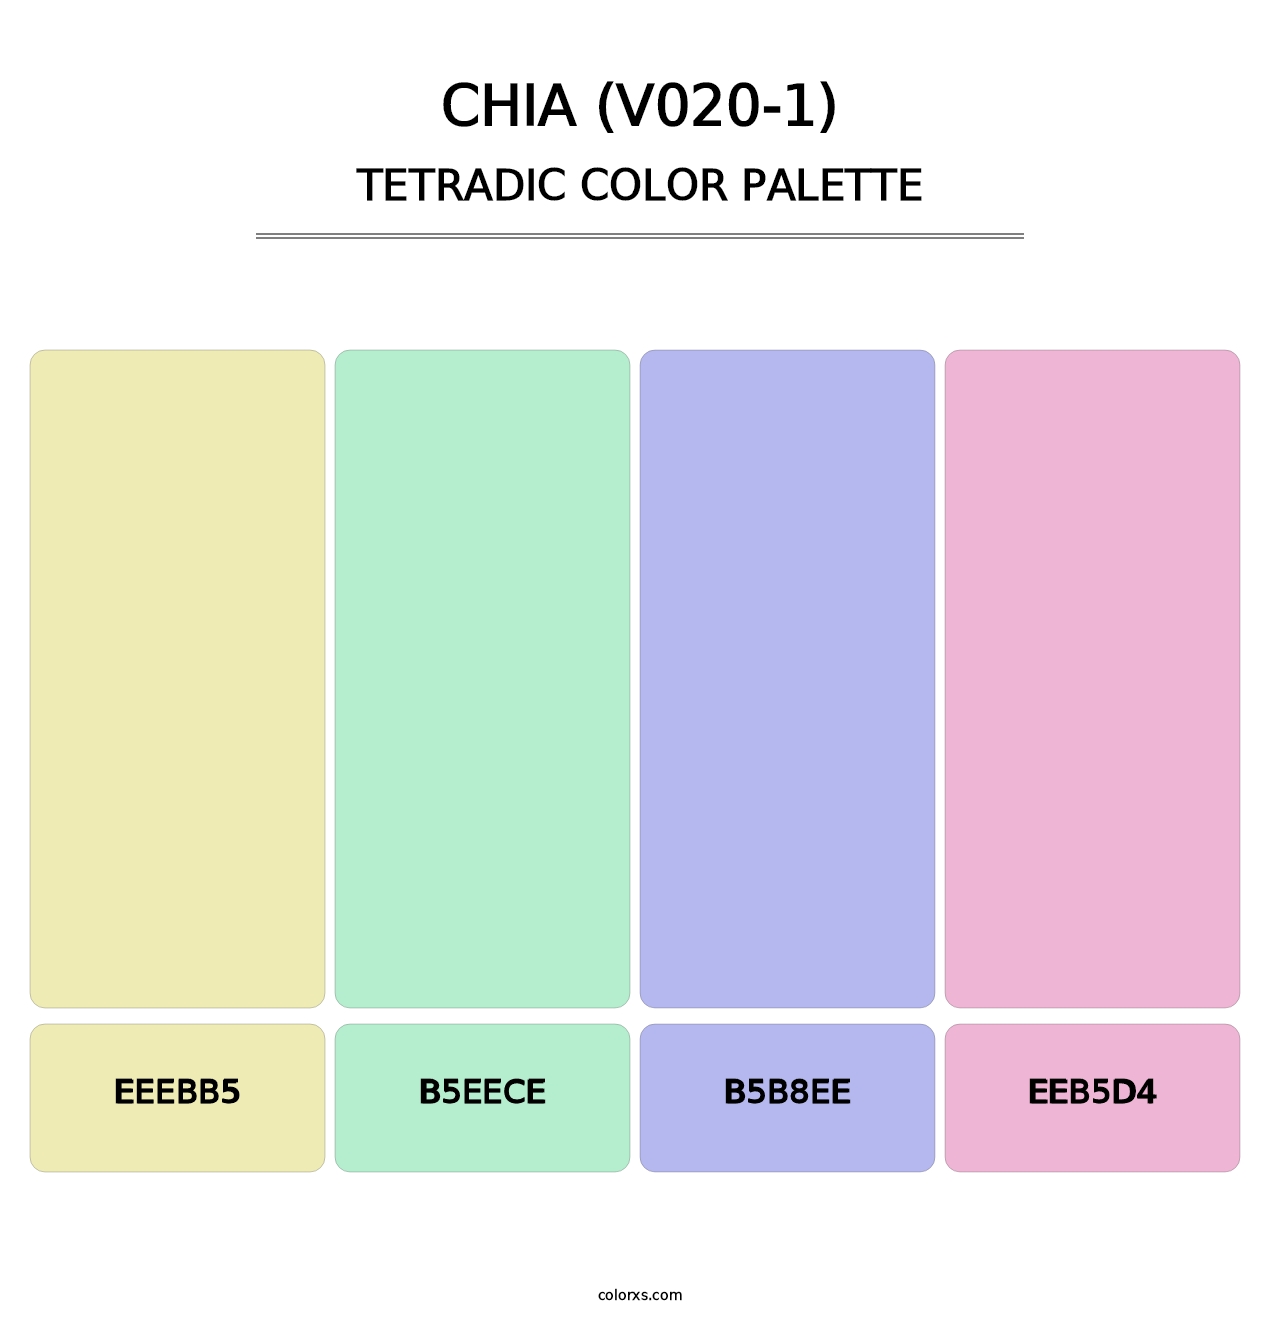 Chia (V020-1) - Tetradic Color Palette